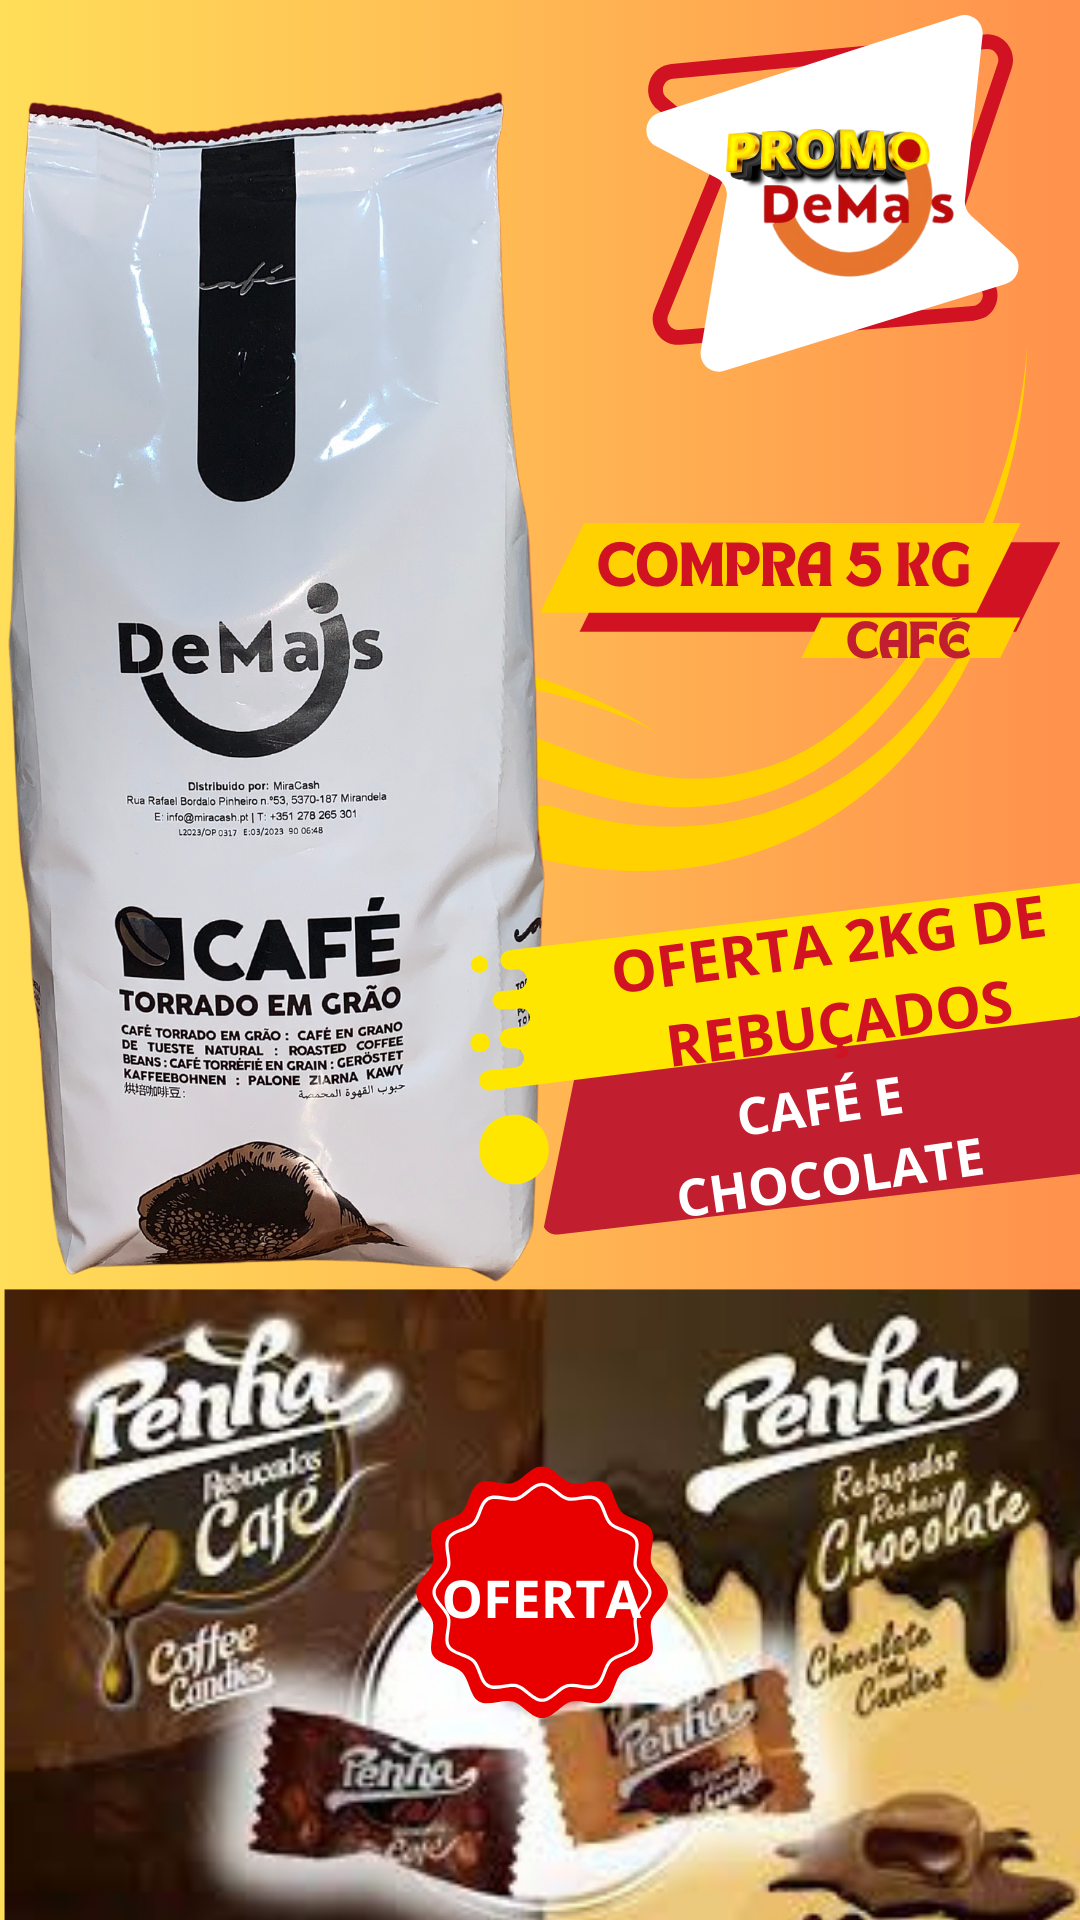 CAFÉ DEMAIS 5KG - OFERTA 2KG REBUÇADOS